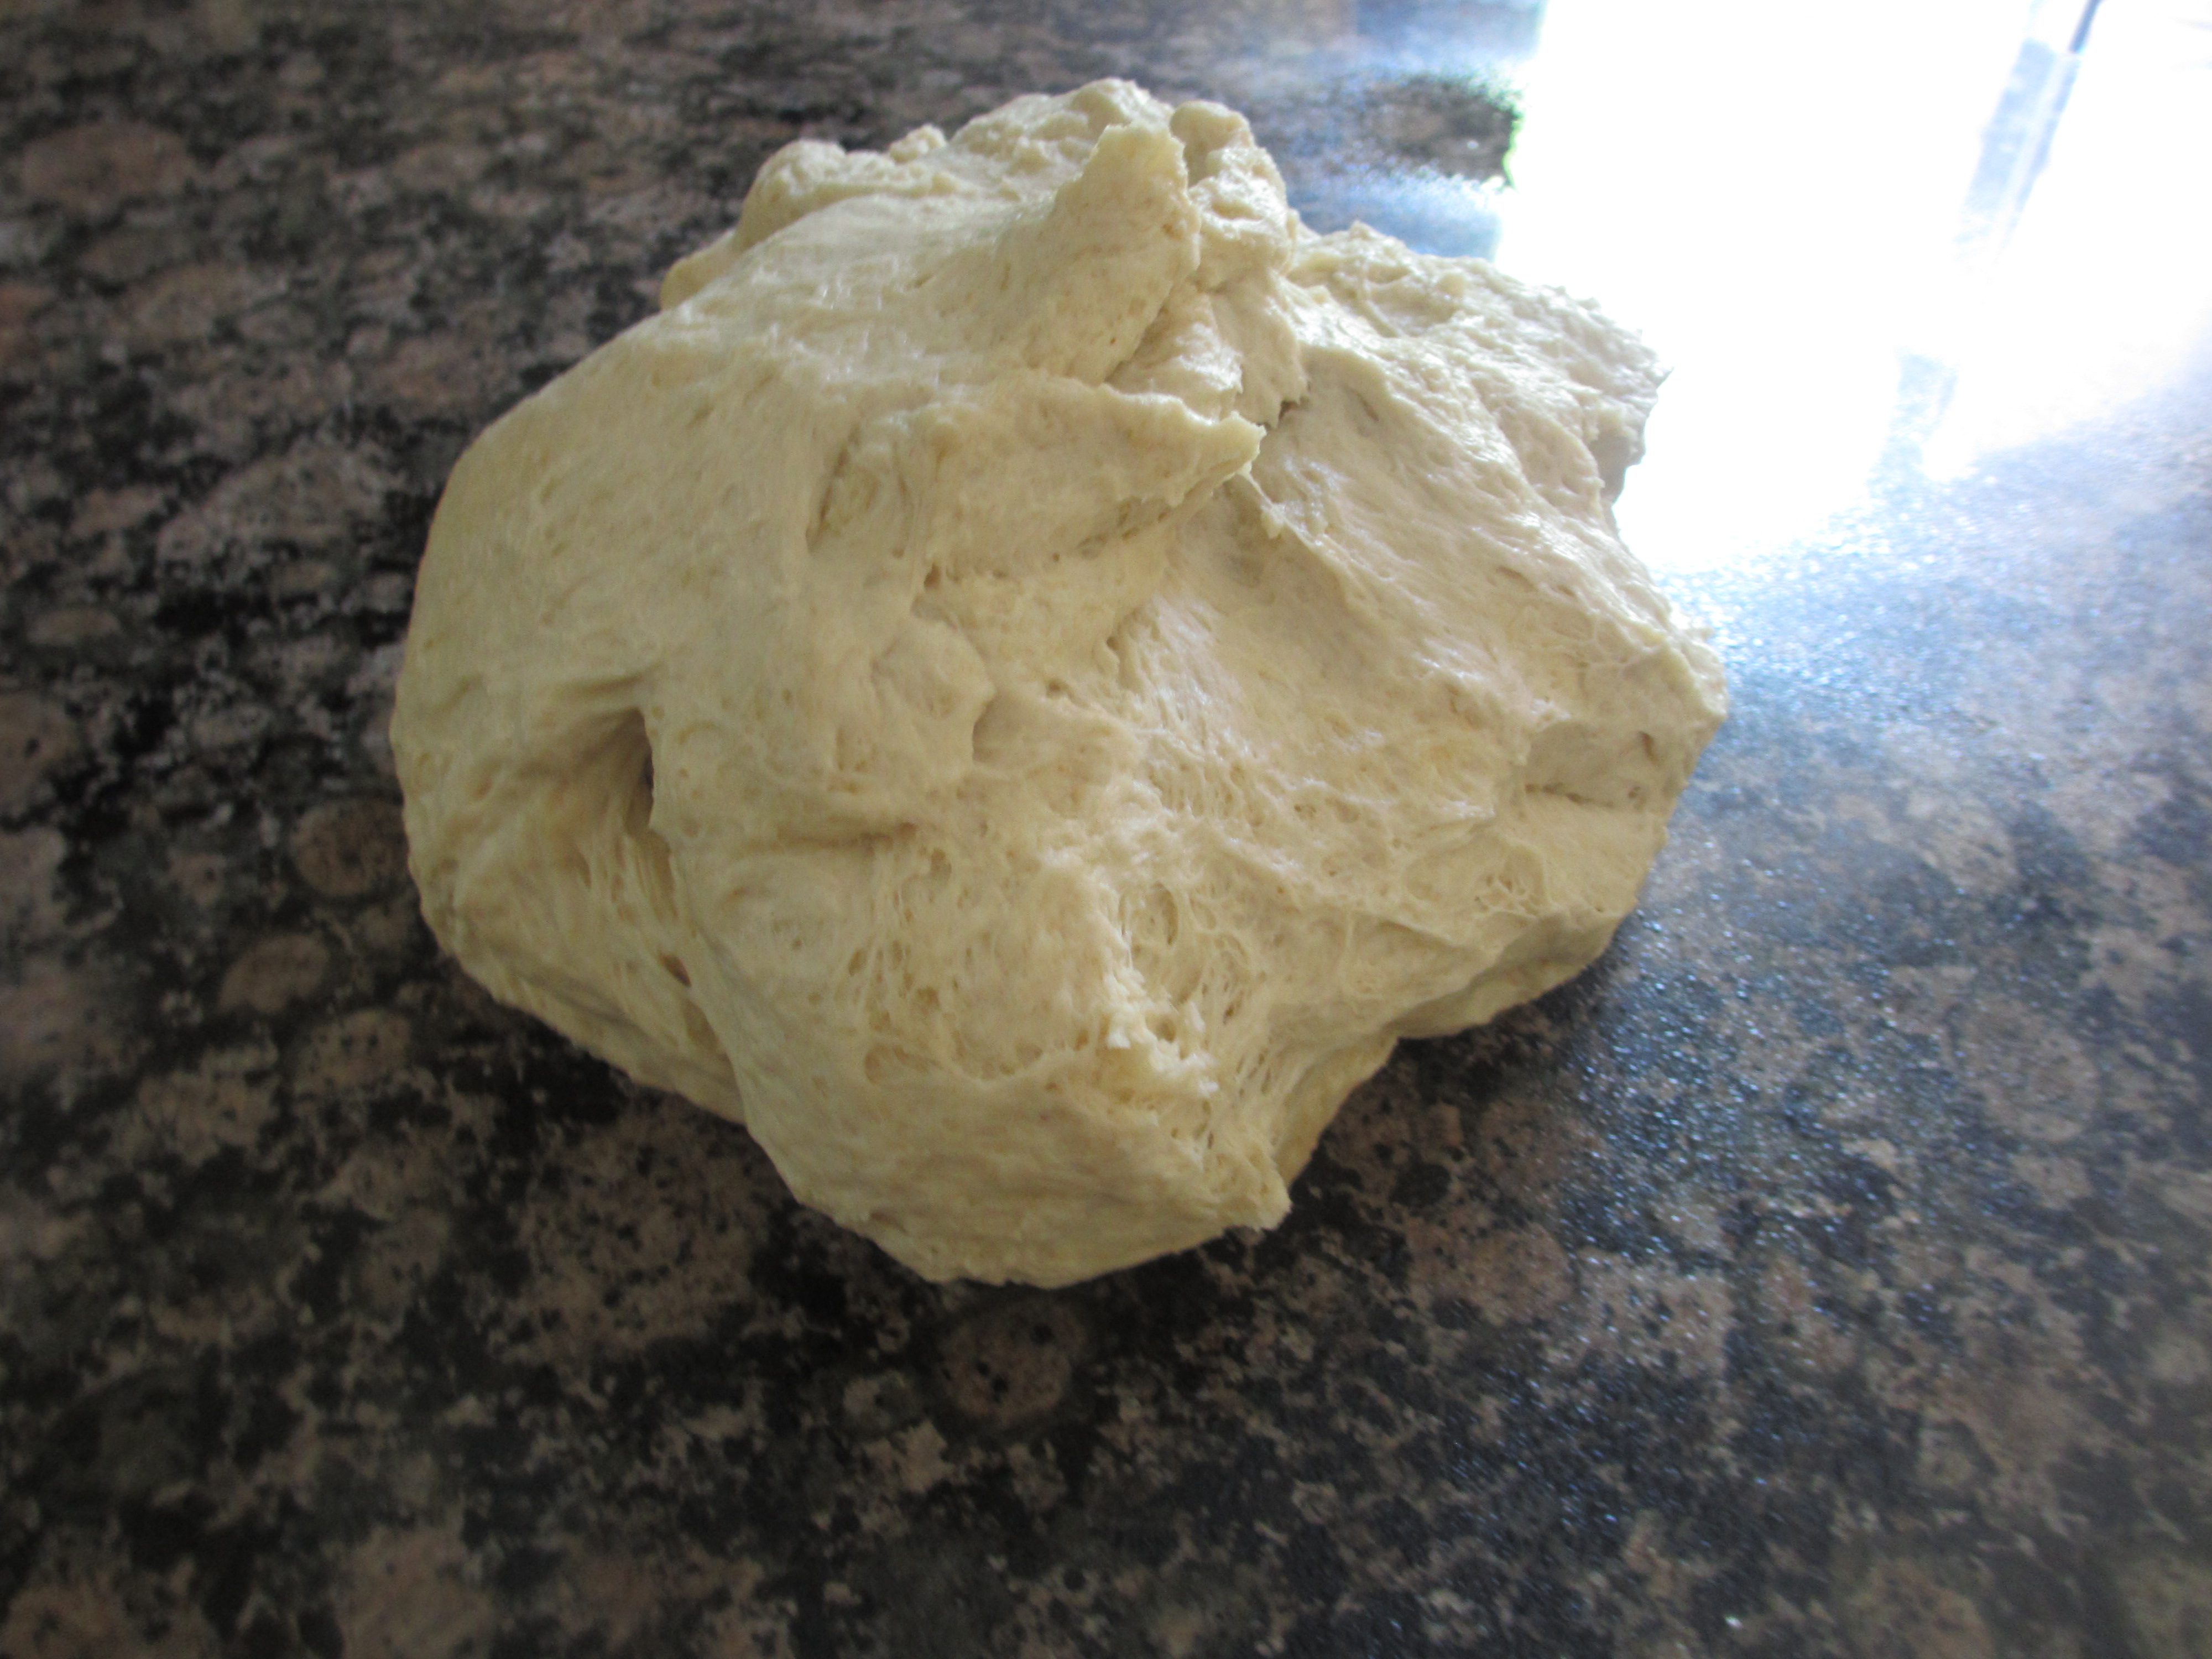 Ball of dough